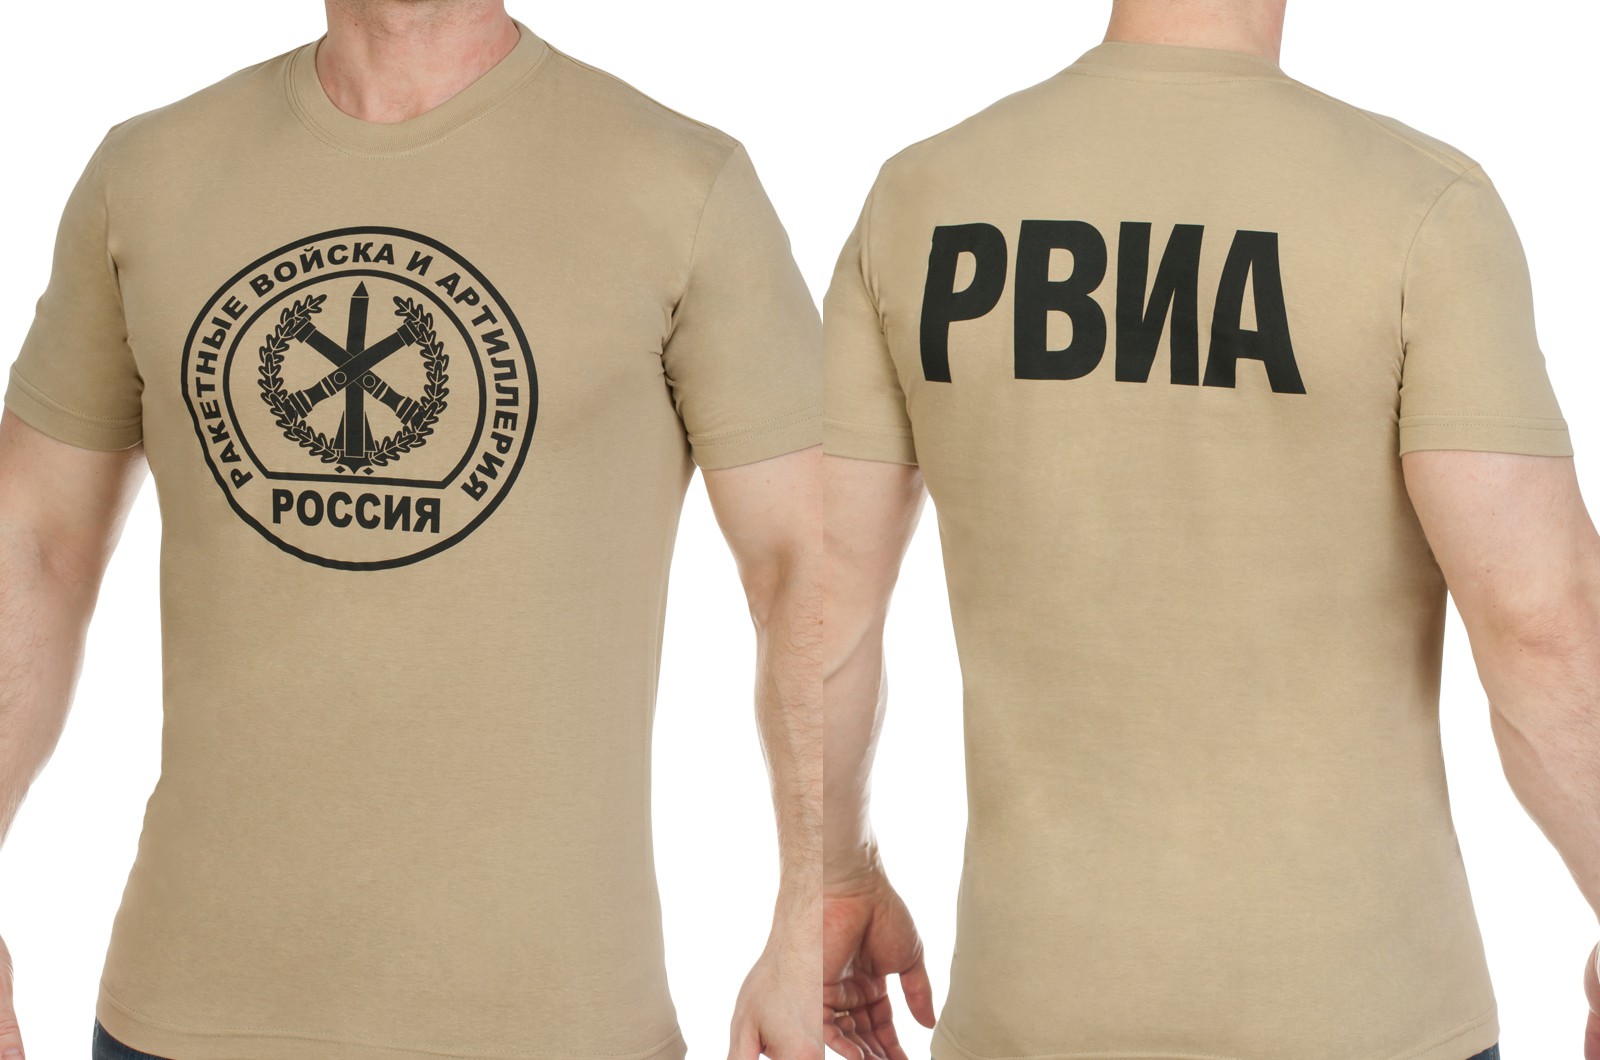 Купить футболку с символикой РВиА в военторге Военпро